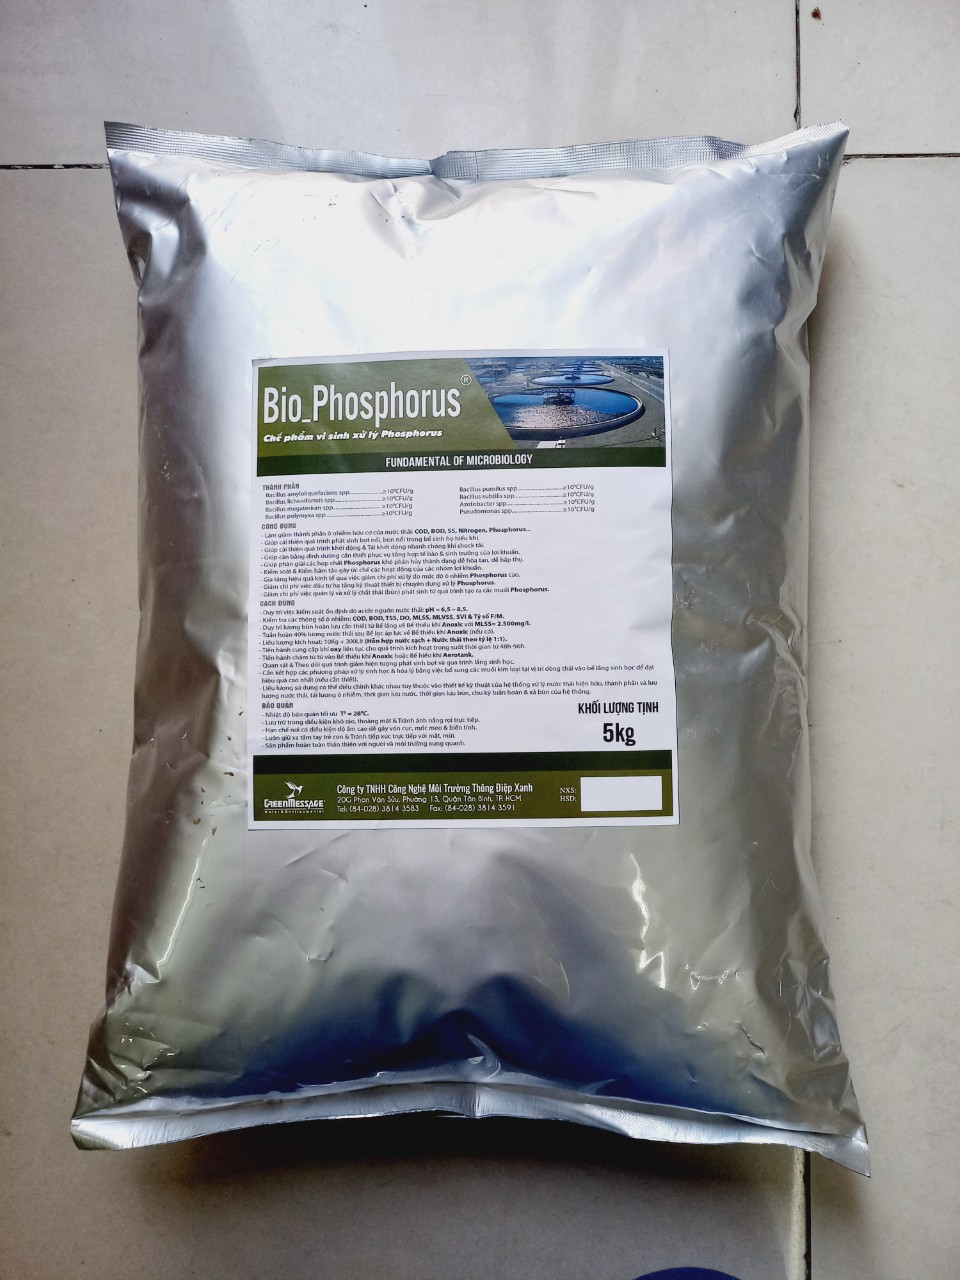 Bio_Phosphoruss - Chế phẩm vi sinh xử lý Phosphorus